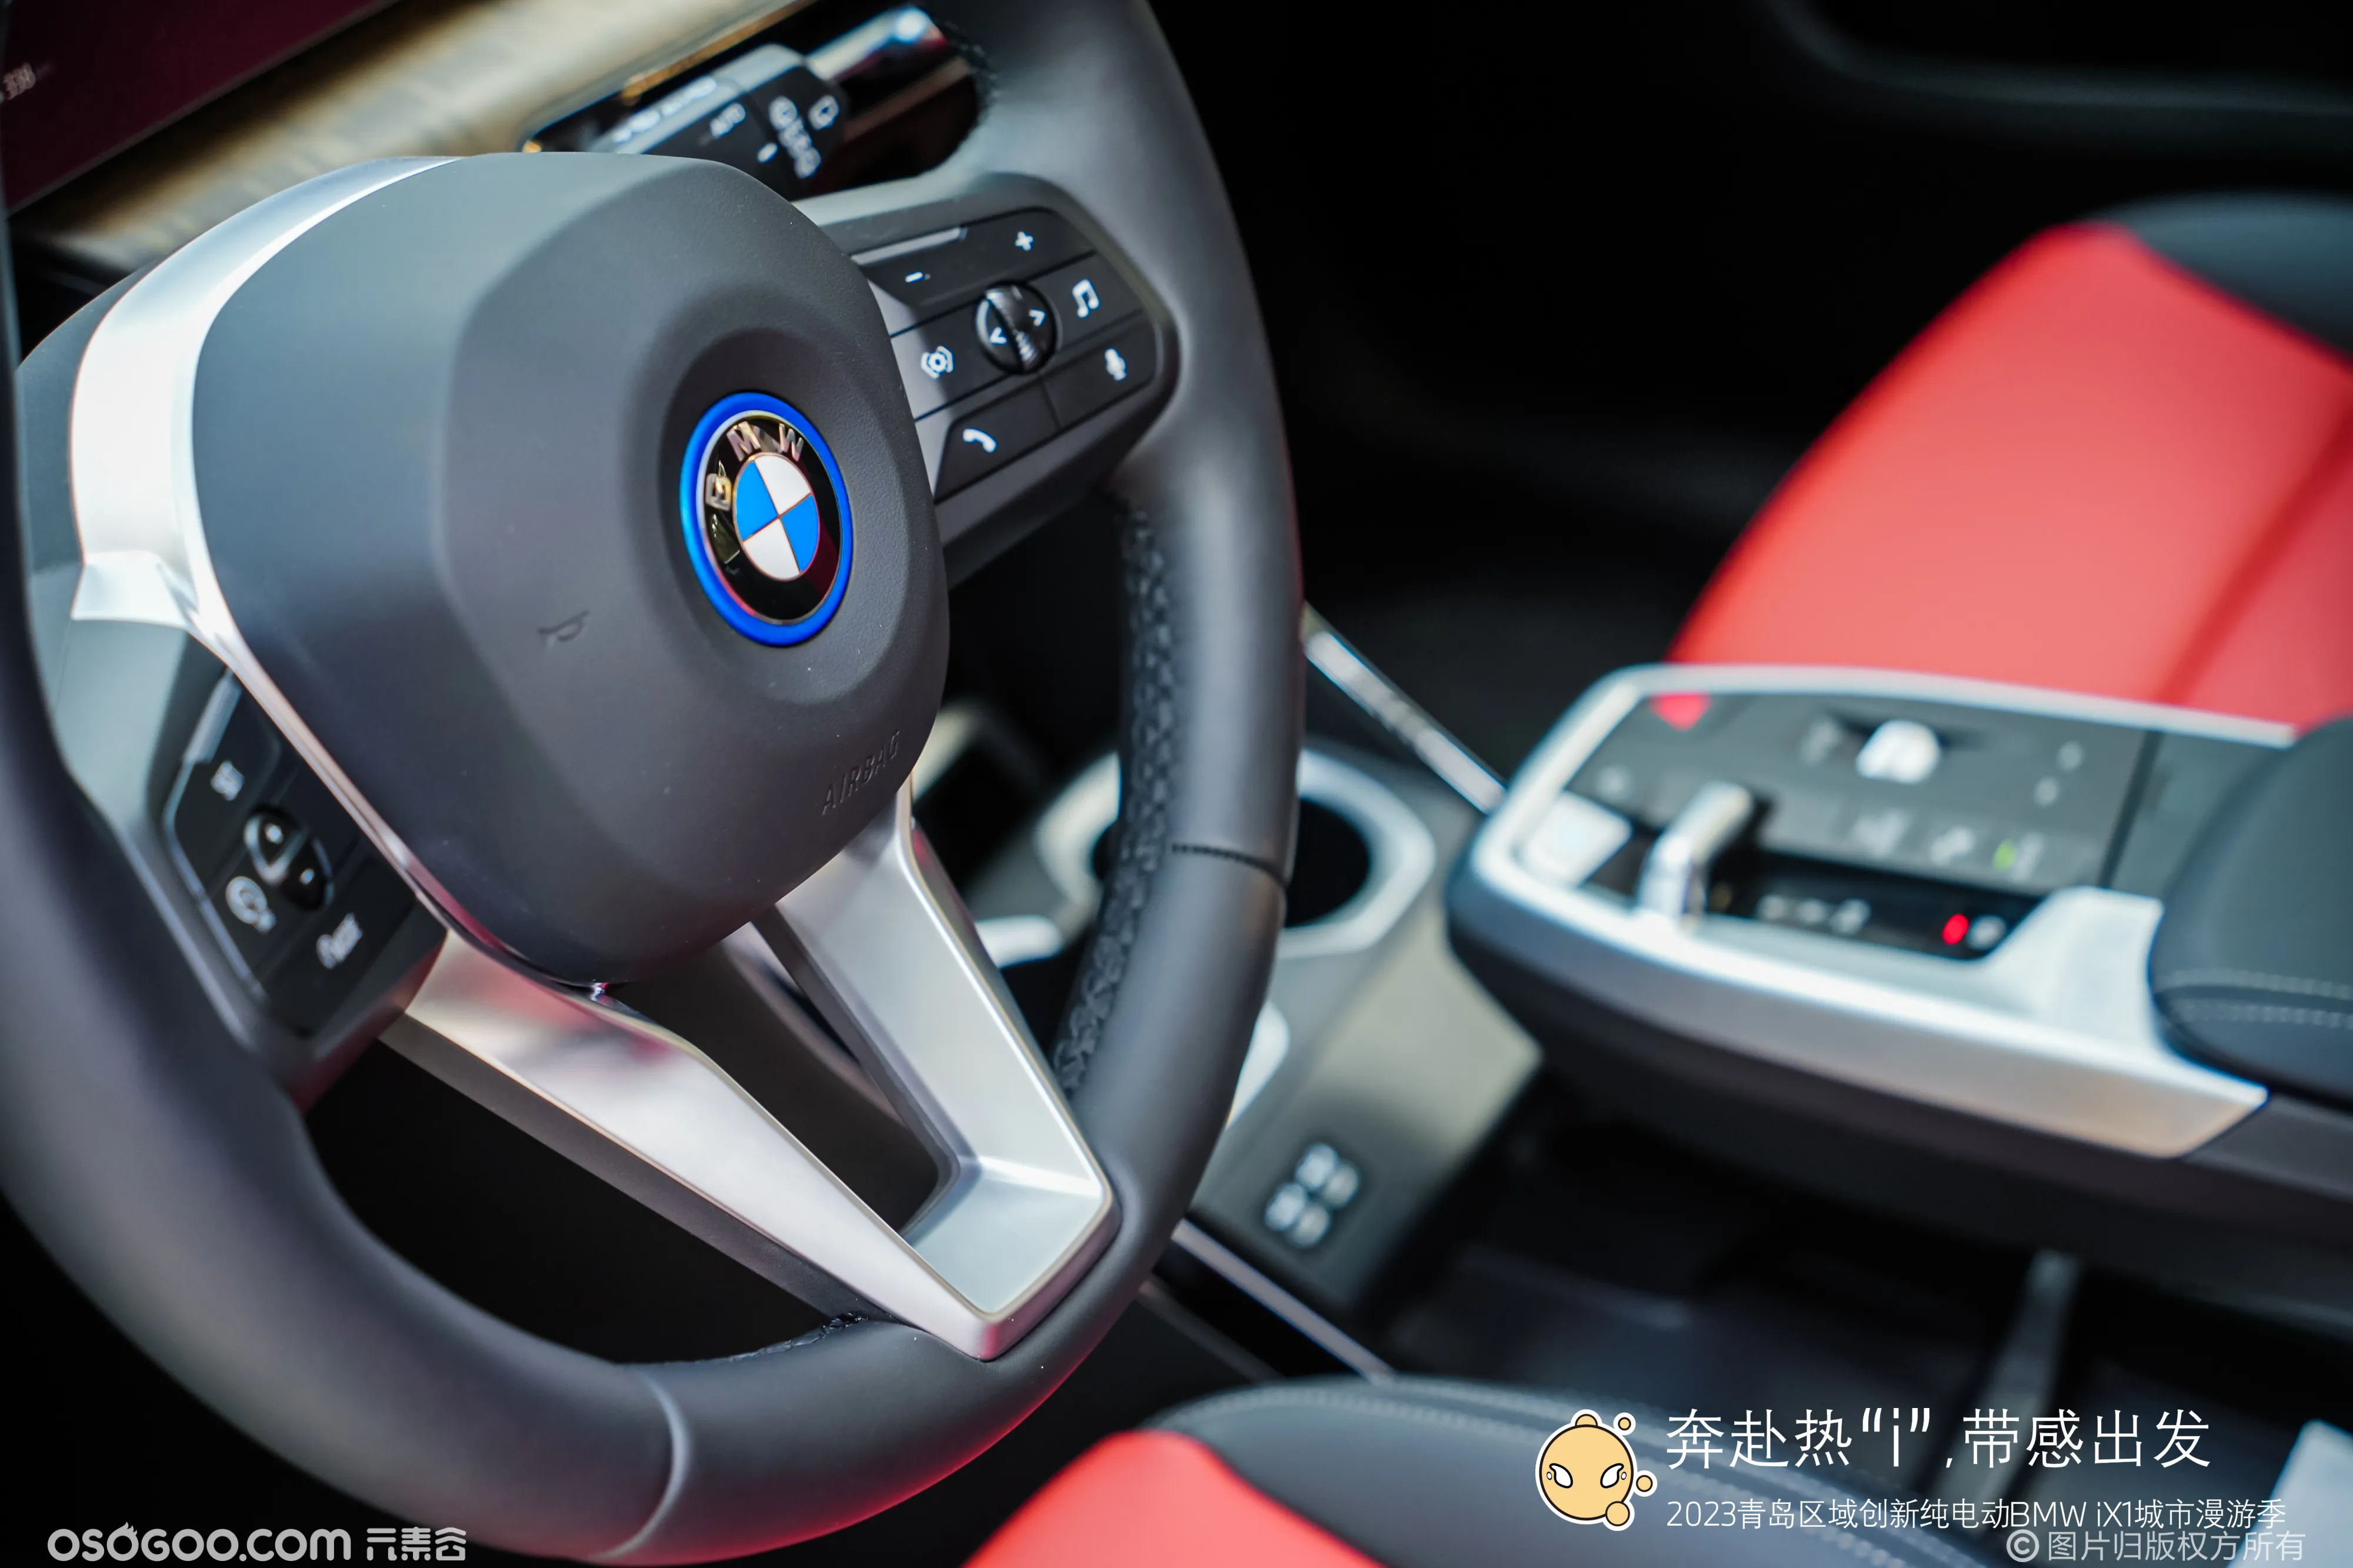 2023青岛区域创新纯电动BMW iX1城市漫游季